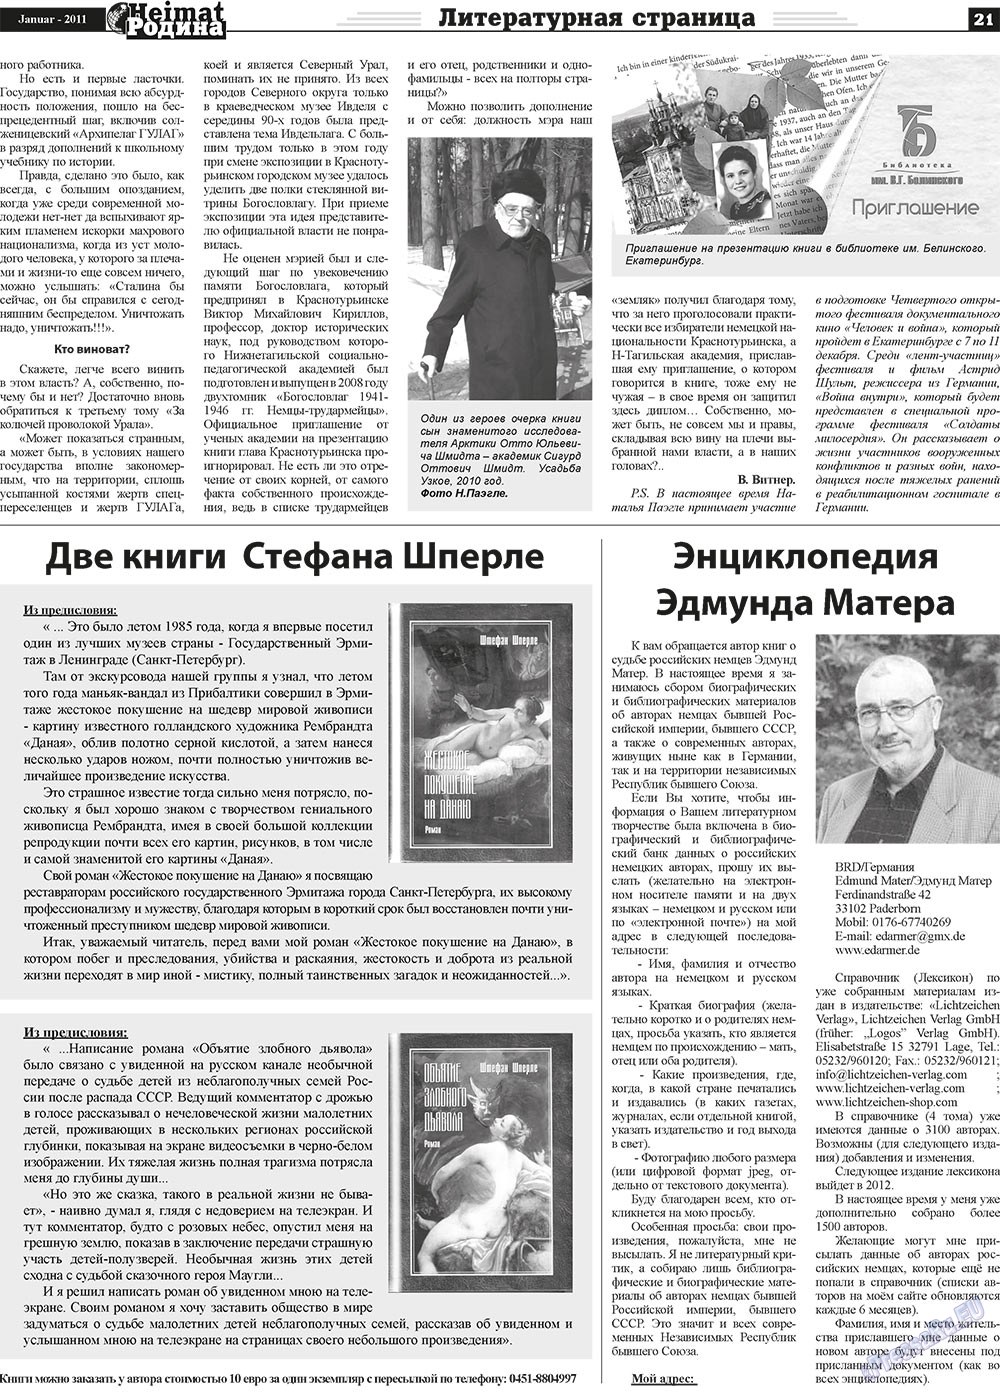 Heimat-Родина (газета). 2011 год, номер 1, стр. 21